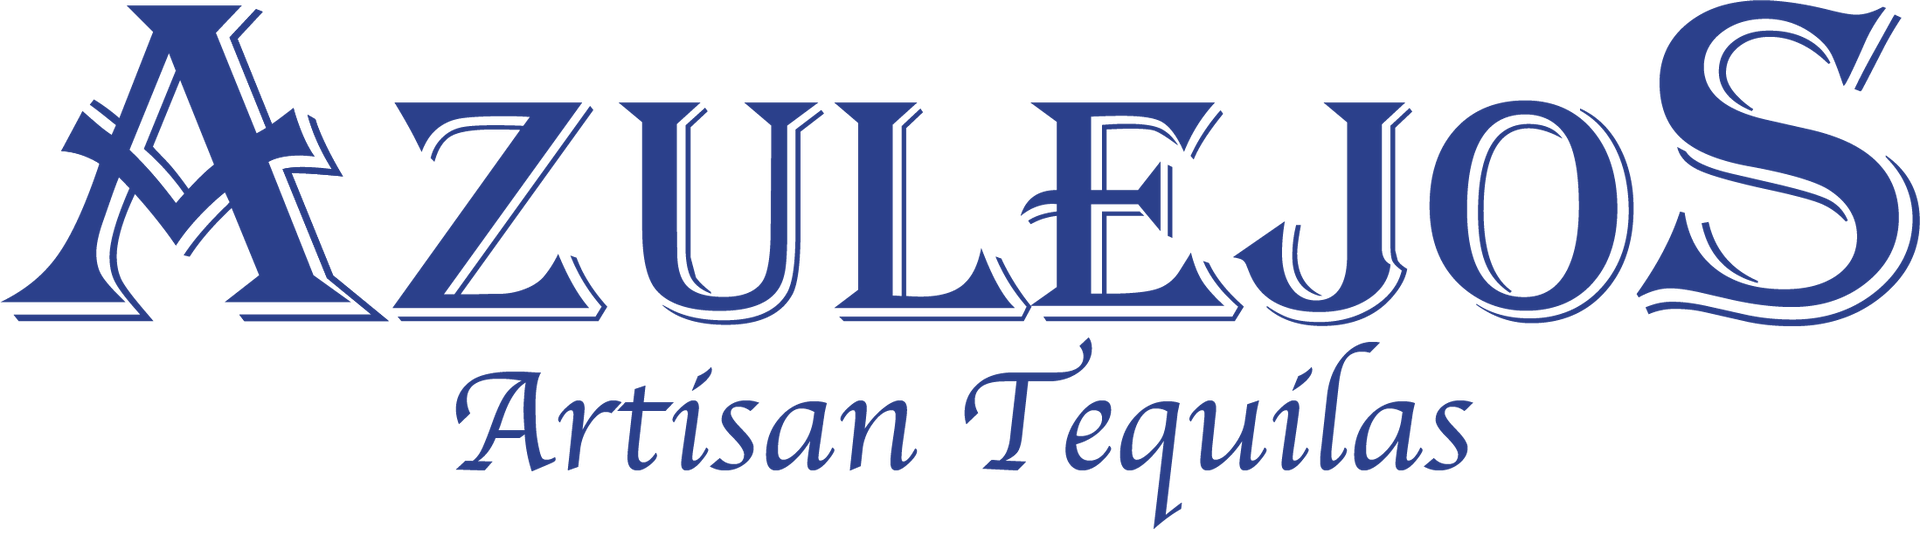 Azulejos Tequila Logo